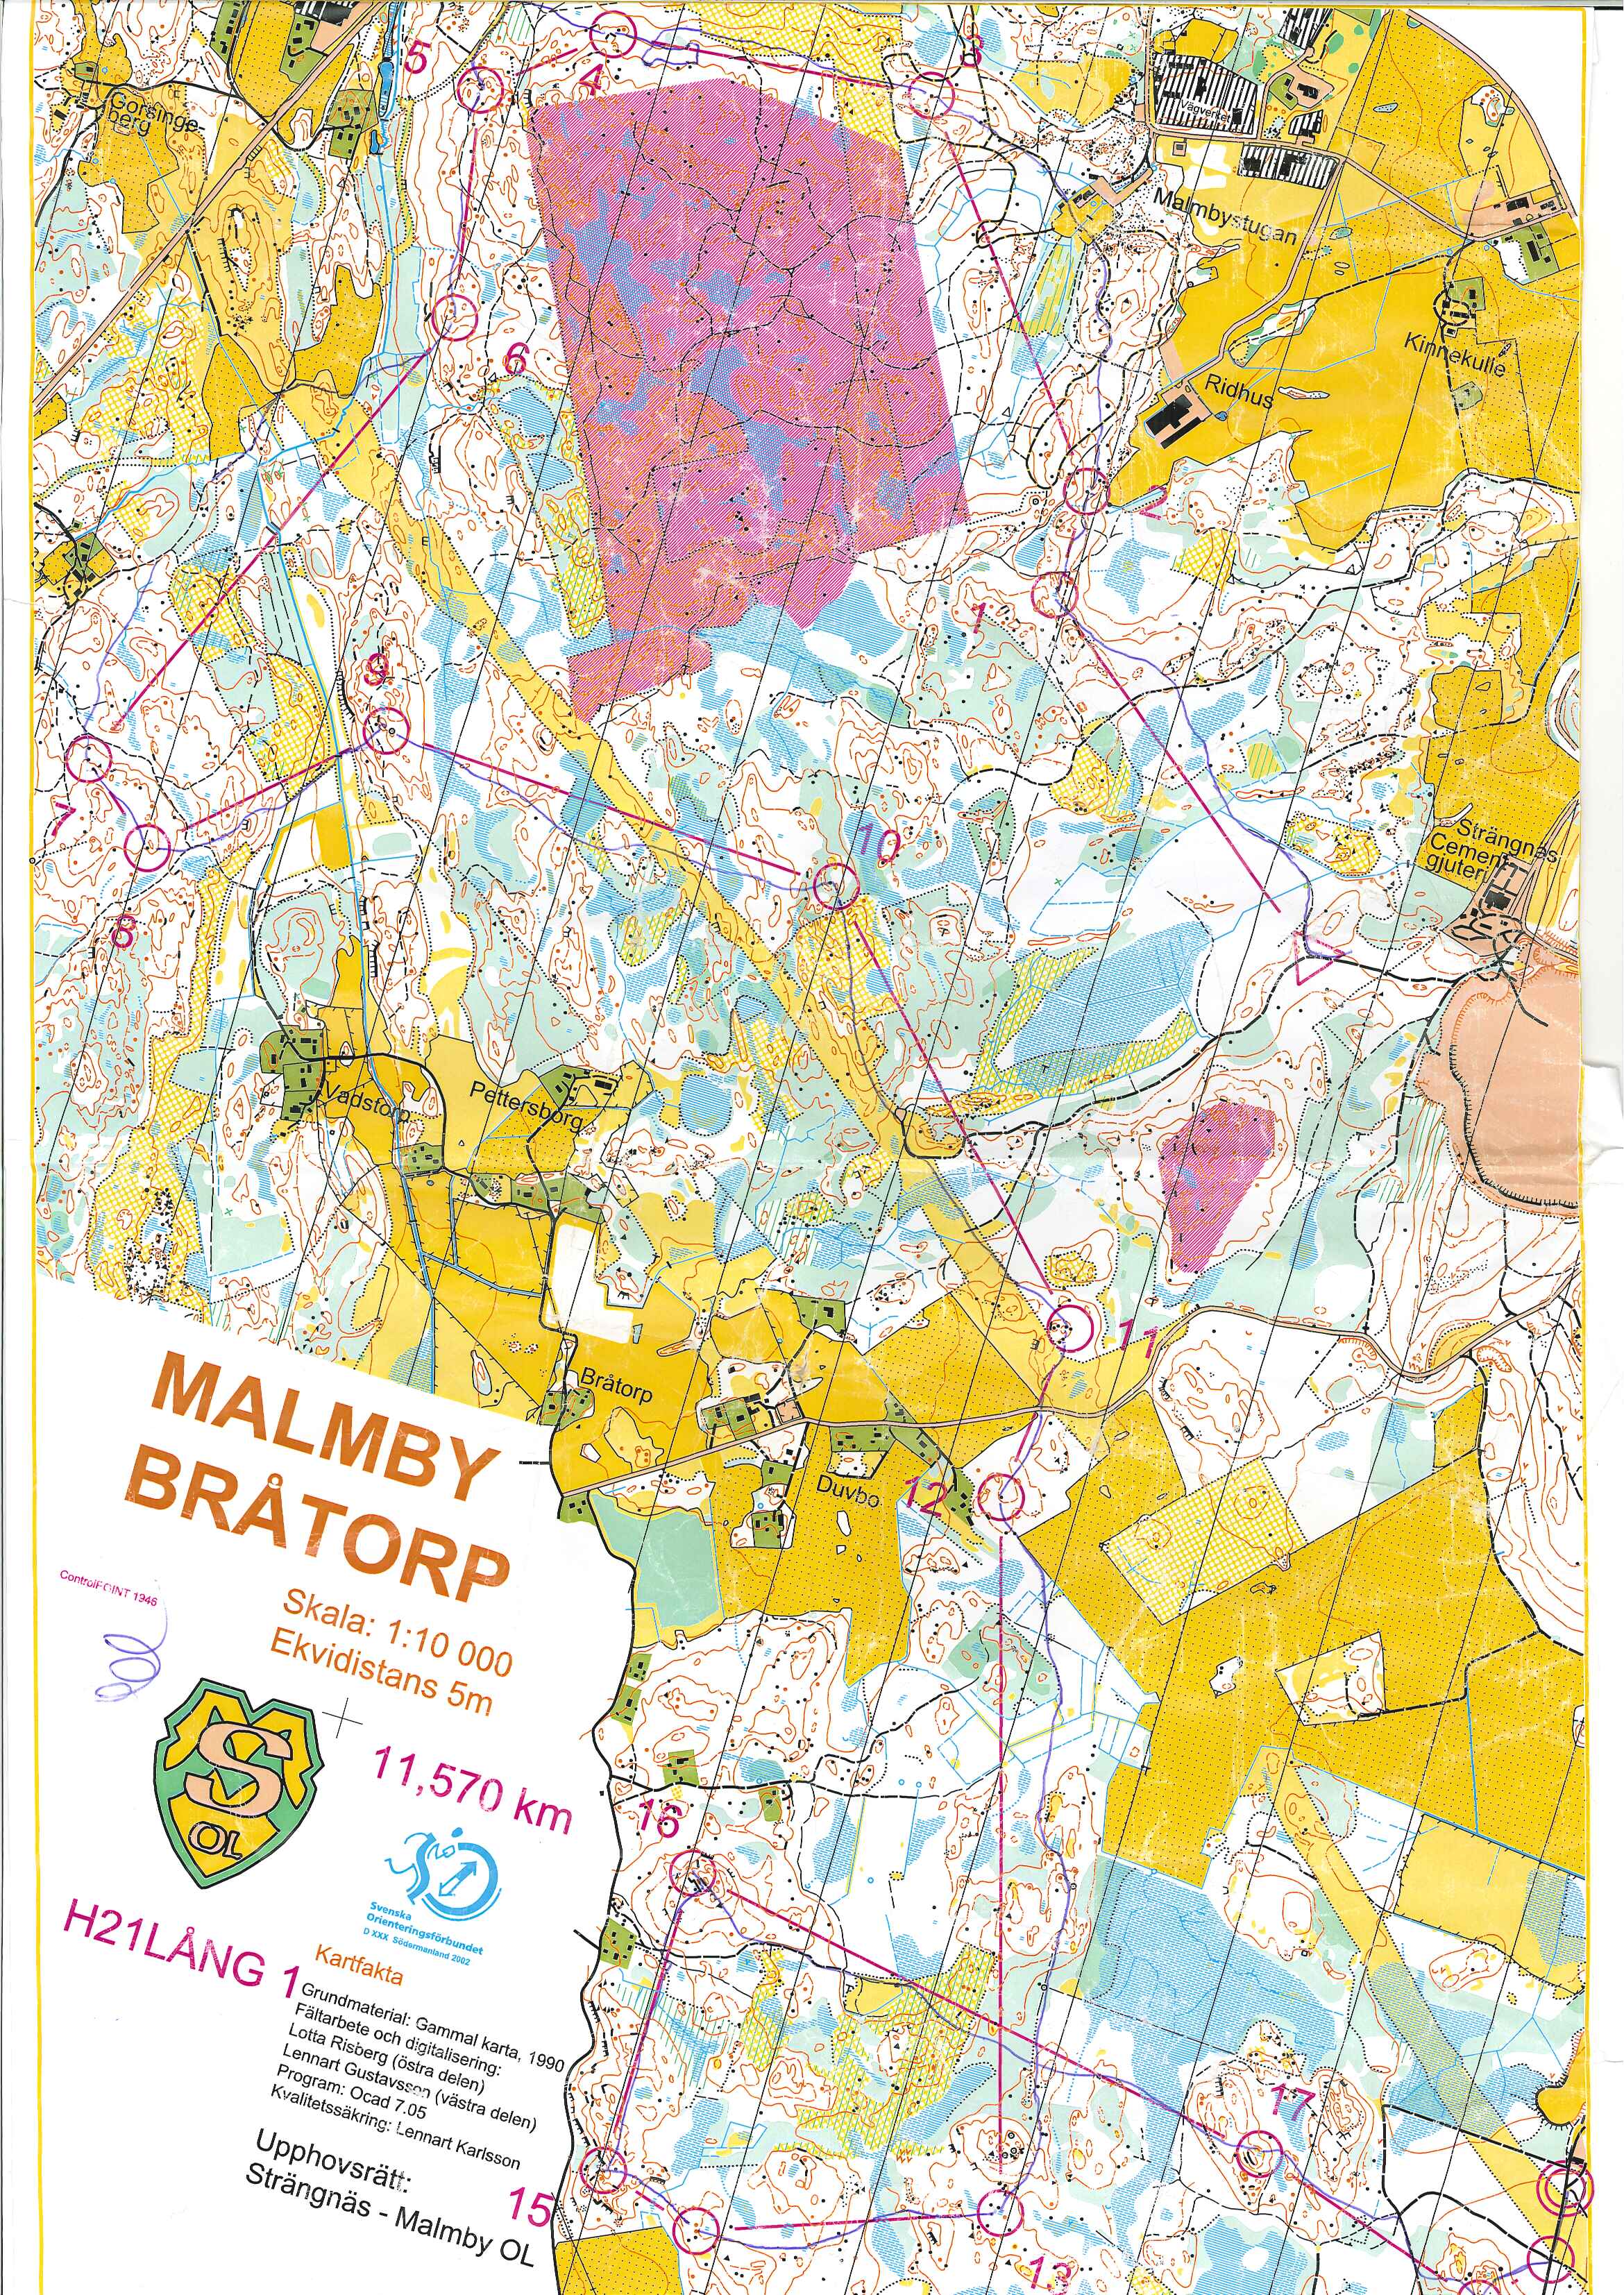 Strängnäs-Malmby (2002-04-01)